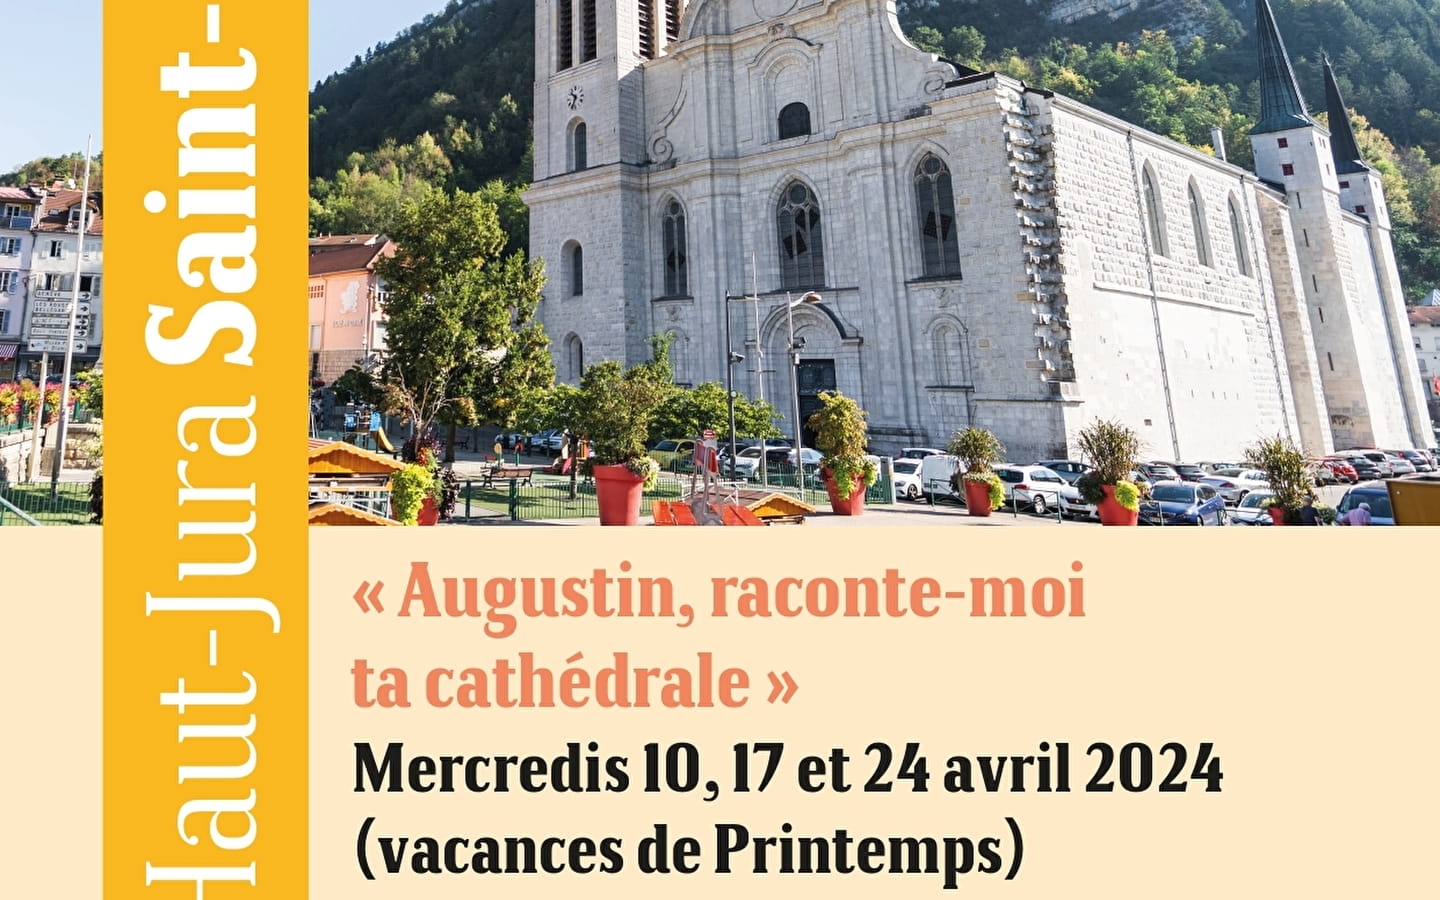 Office de Tourisme Haut-Jura Saint-Claude - Geführte Besichtigungen : Entdecken Sie die Stadt Saint-Claude